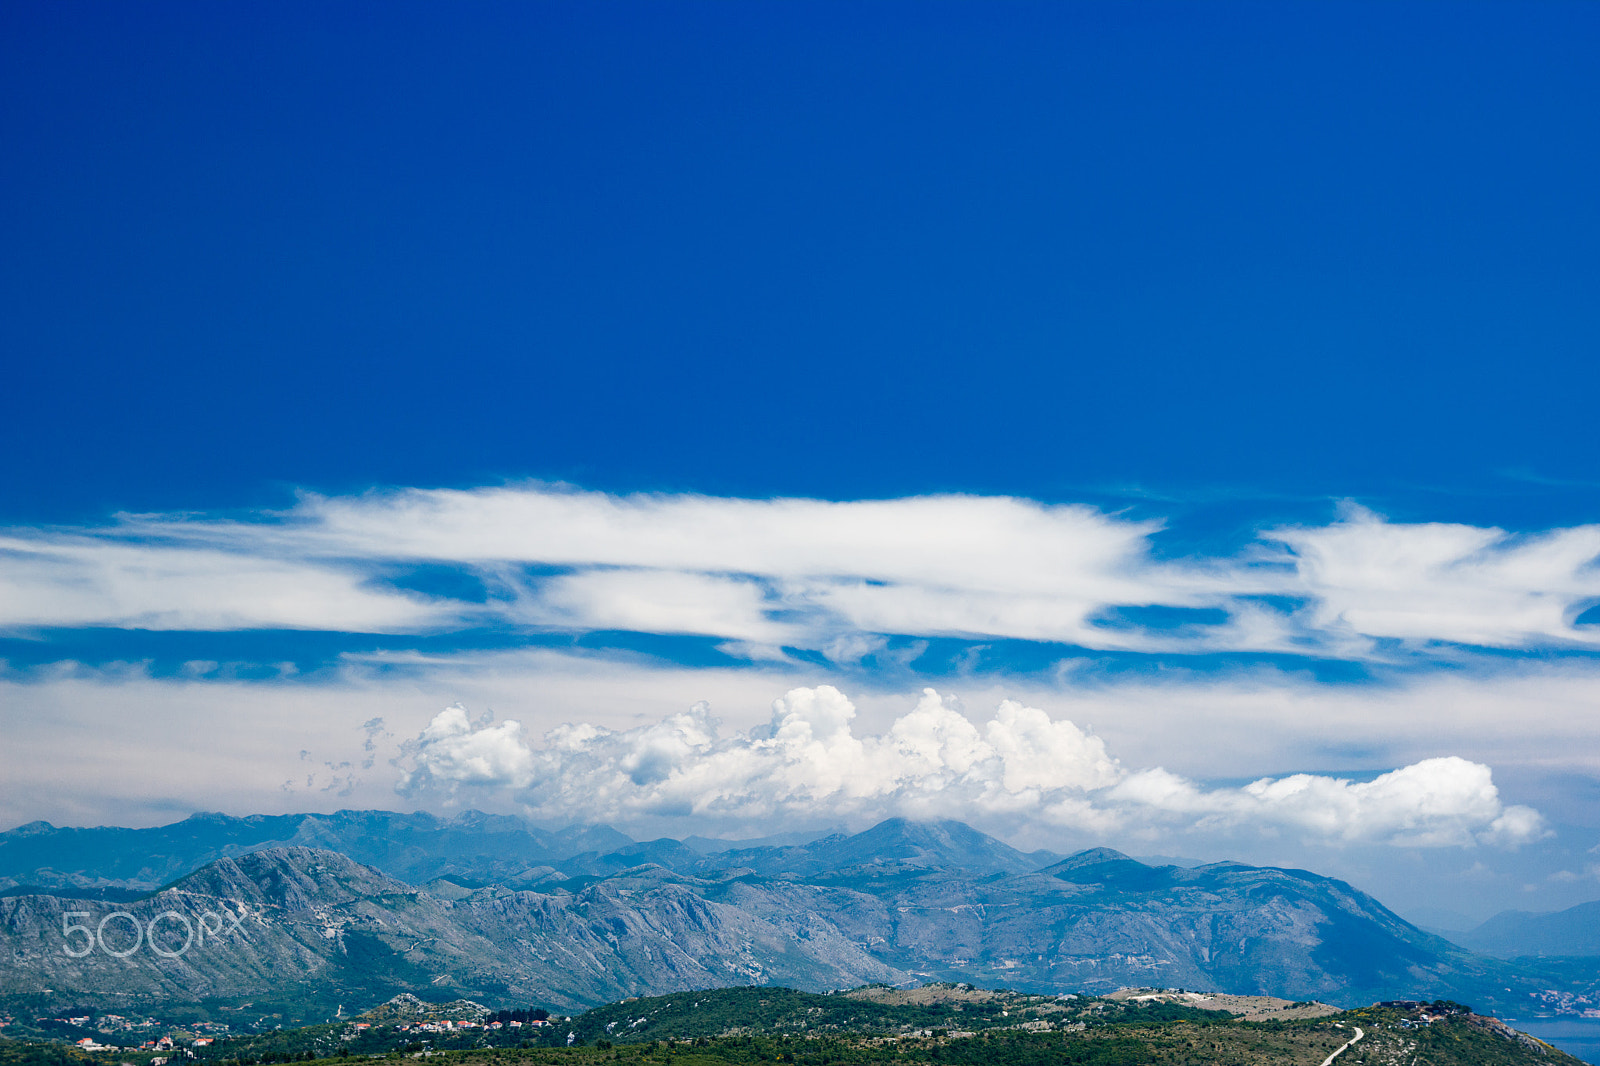 Canon EOS 600D (Rebel EOS T3i / EOS Kiss X5) sample photo. Dubornik croatia mountains view photography